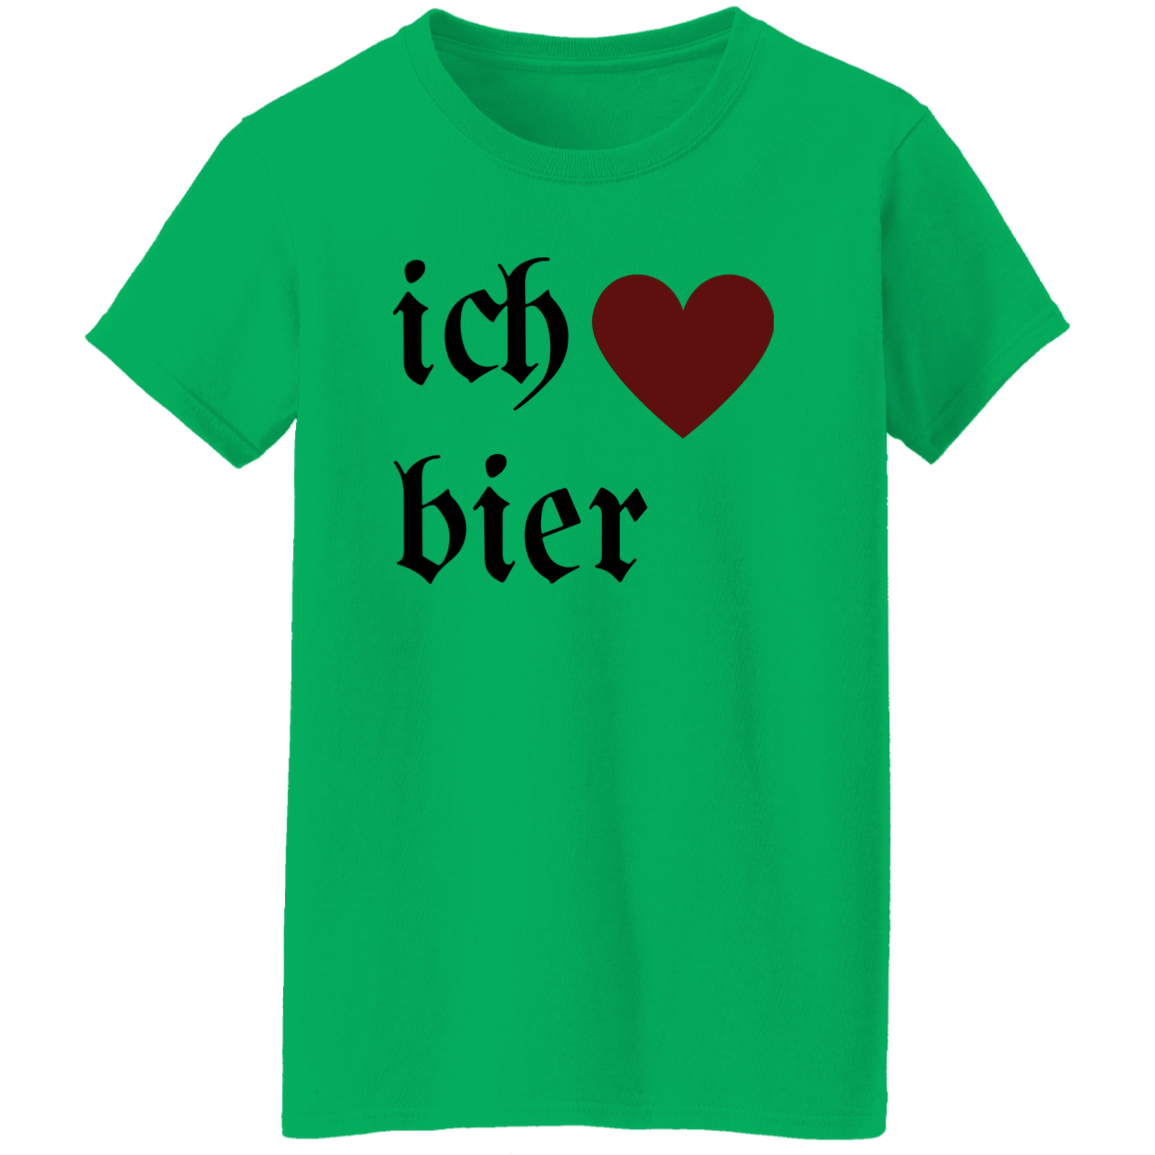 ich "heart" bier (I Love Beer) - Women's, Ladies' T-Shirt